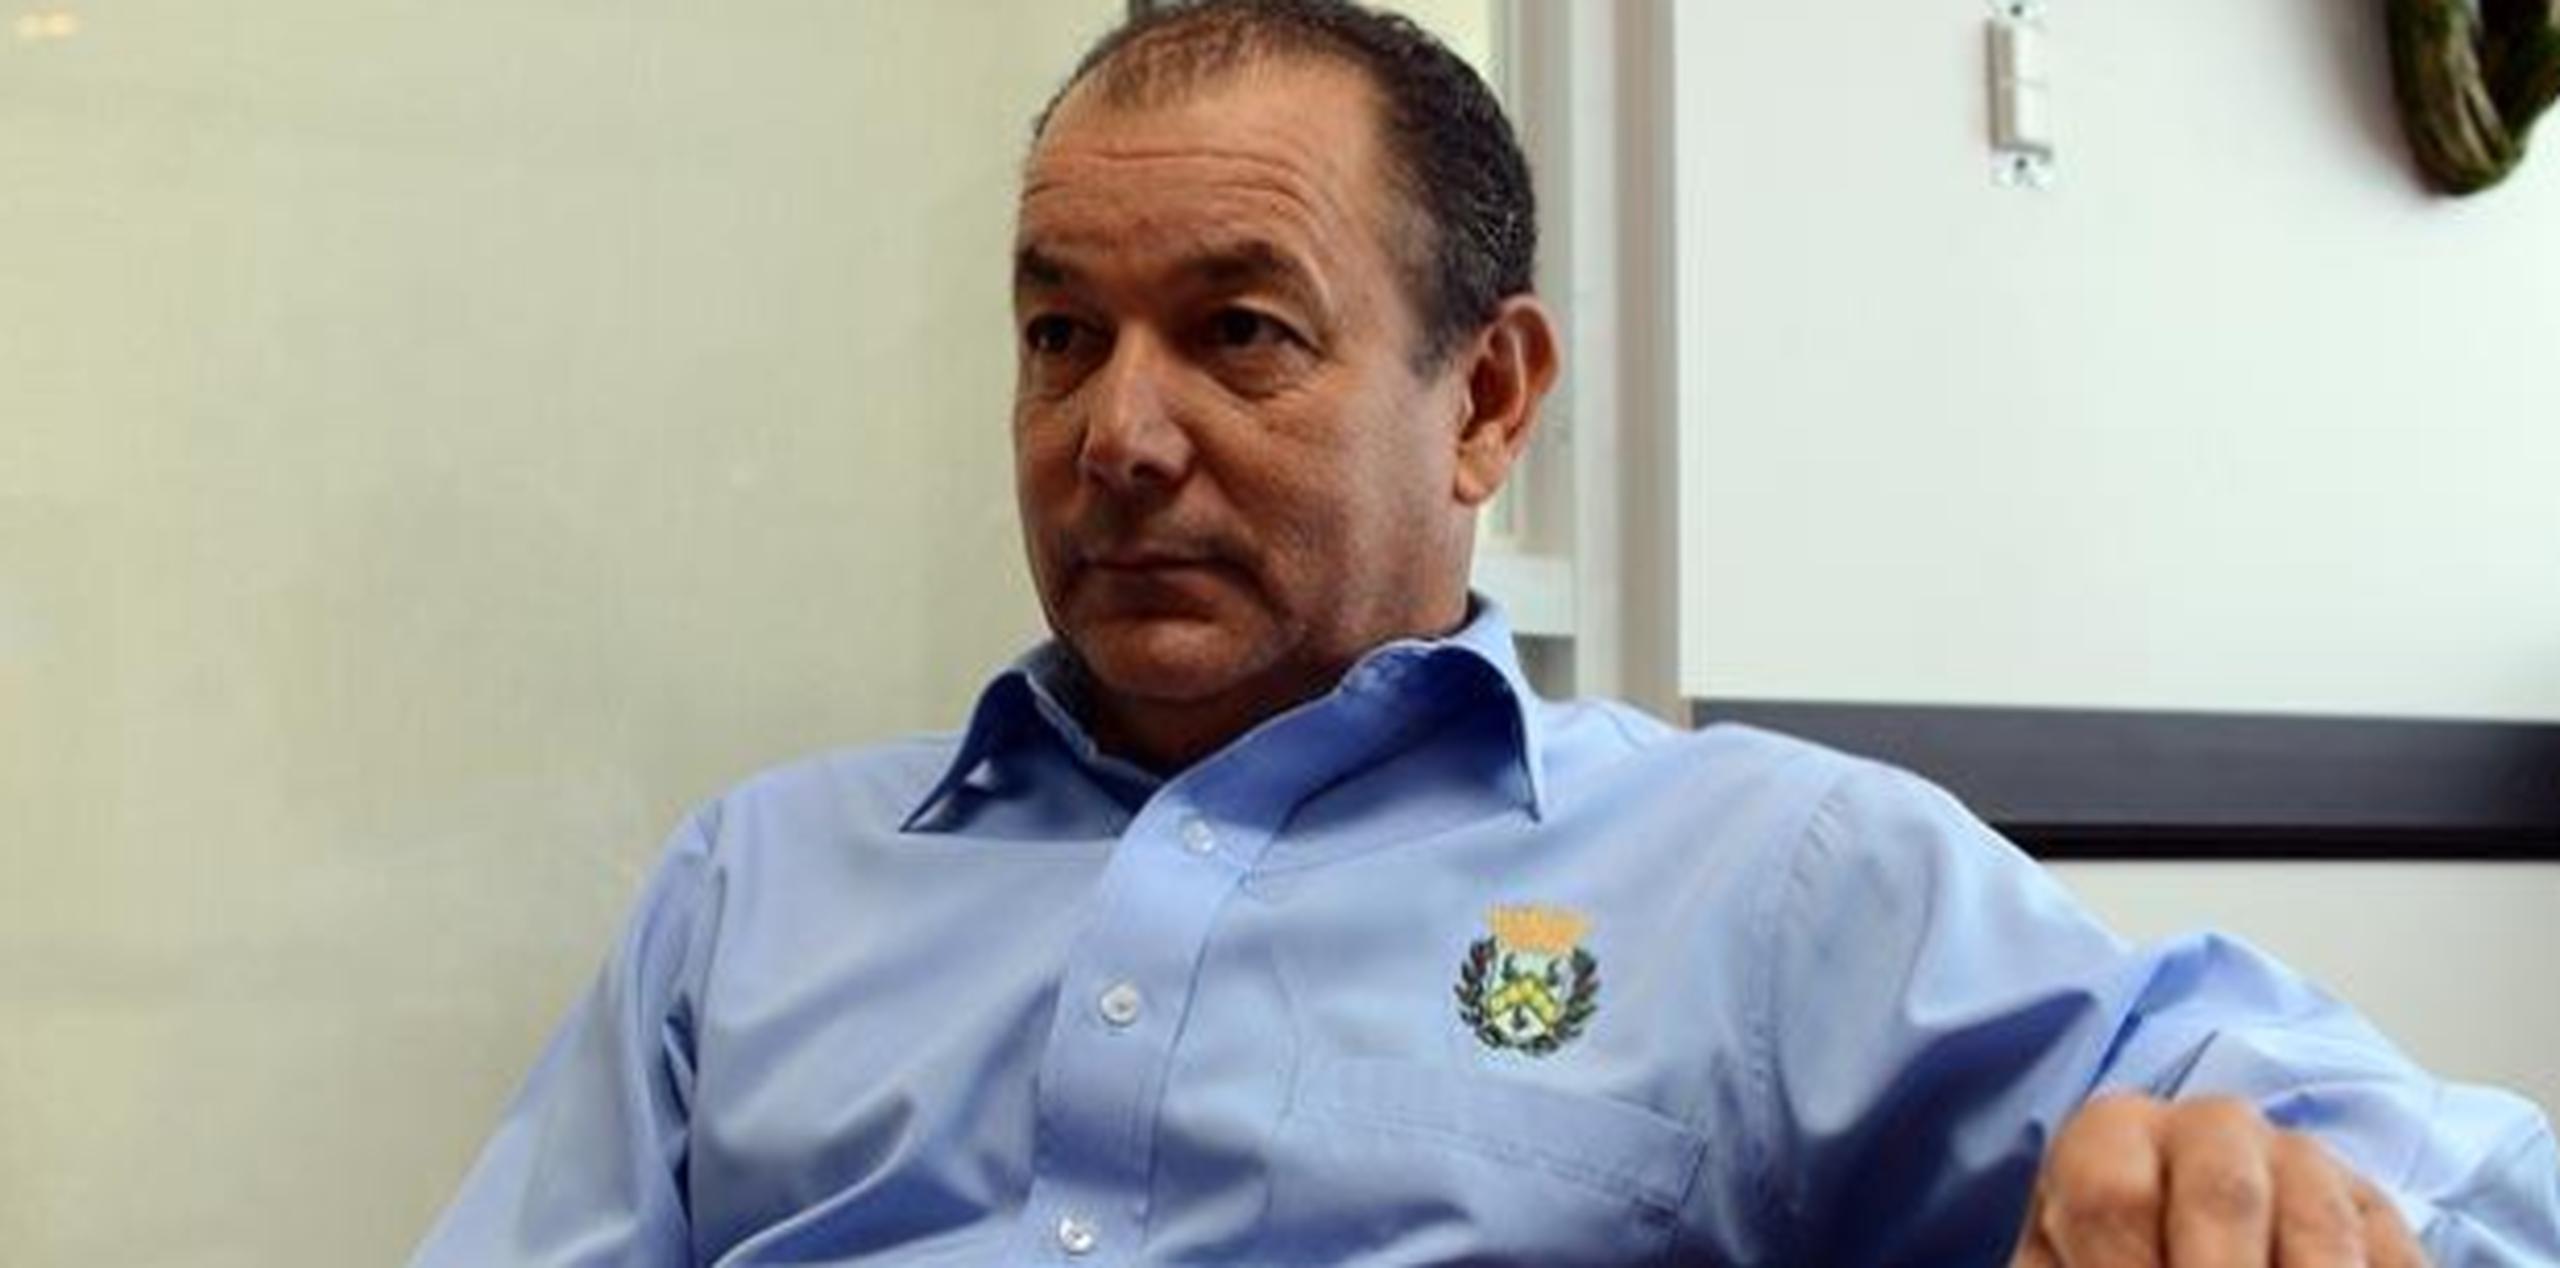 El alcalde con más multas es el novoprogresista de Maricao, Gilberto Pérez Valentín con 5 querellas, multas de $50,000 y con orden de restitución de 18,856. (Archivo)